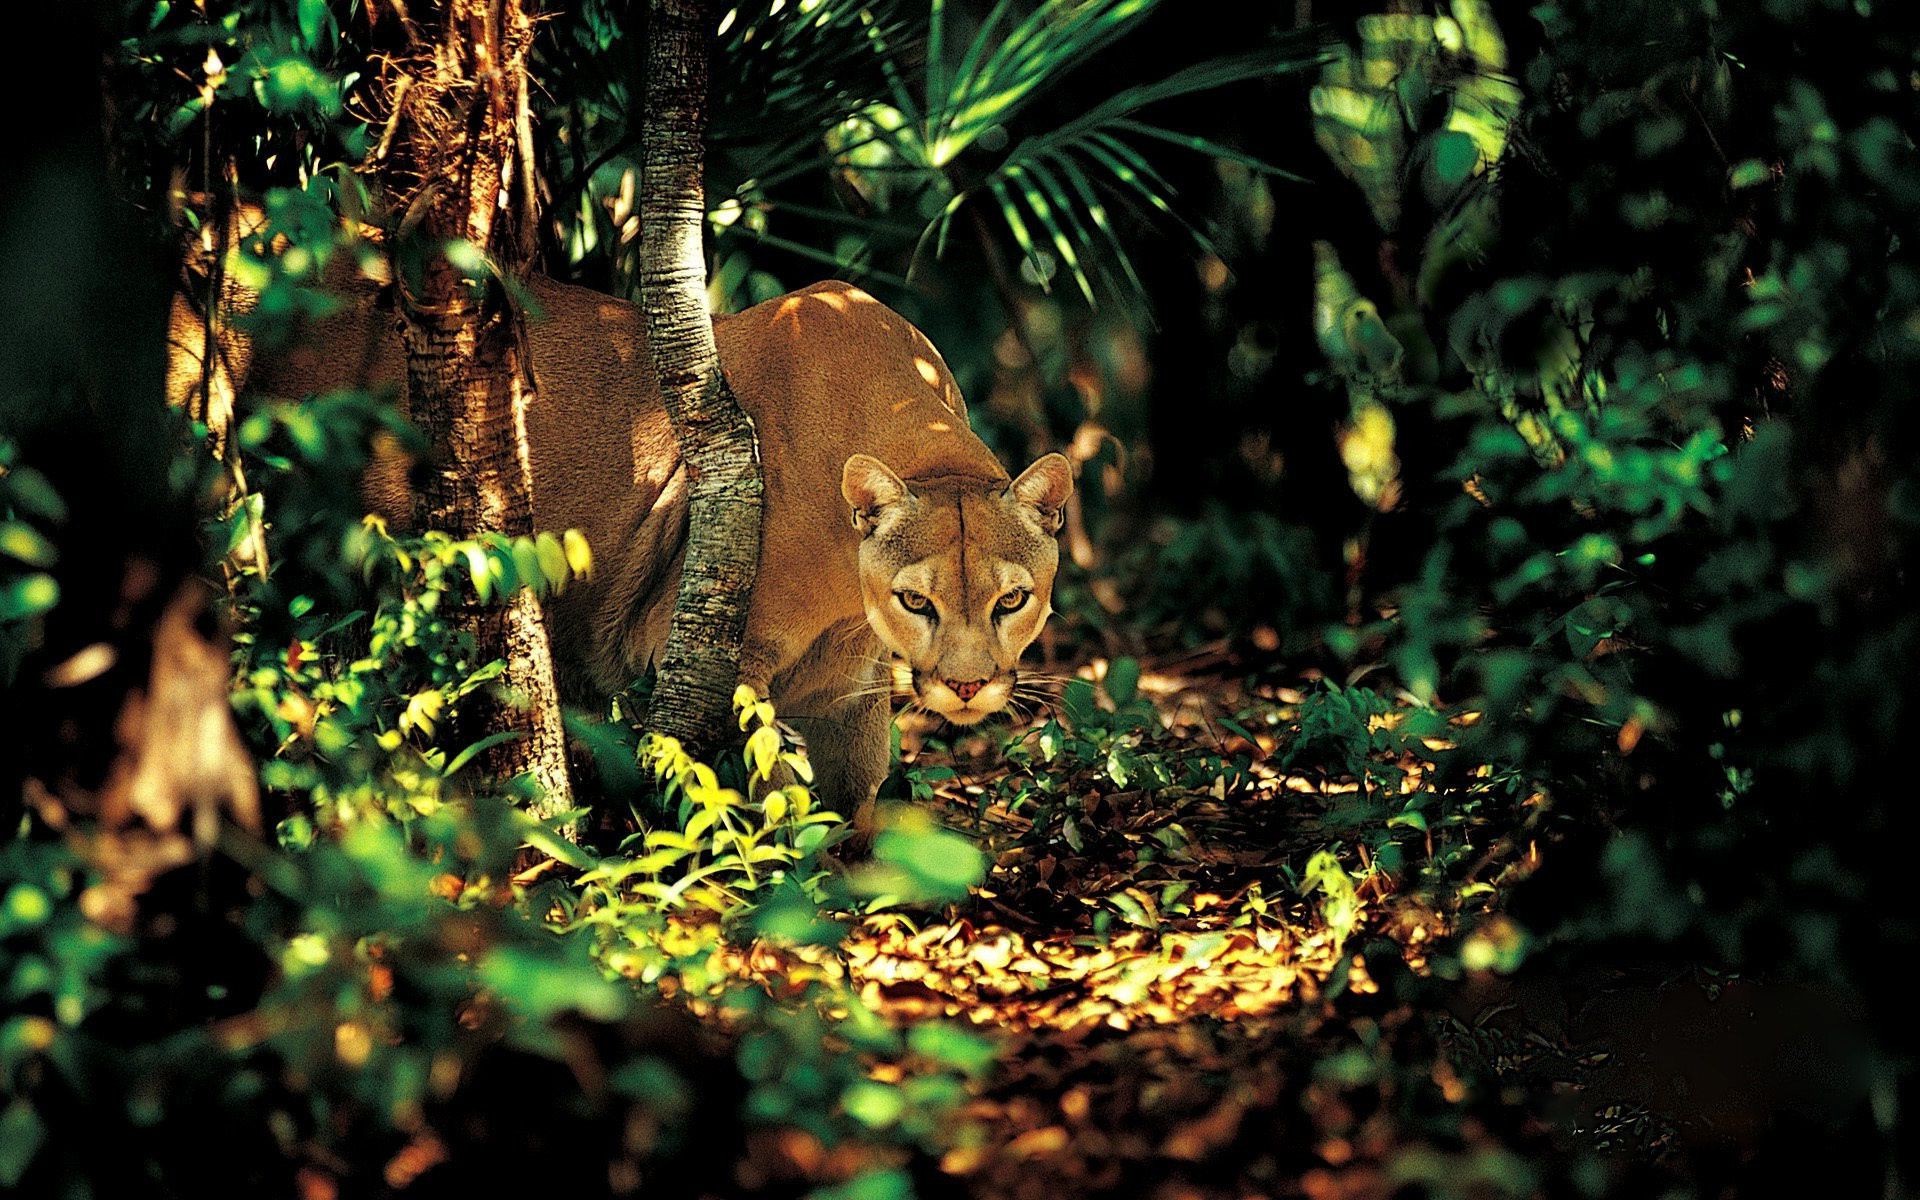 животные древесины кошка млекопитающее природа дикой природы дерево на открытом воздухе лист один животное дикий джунгли зоопарк парк лев